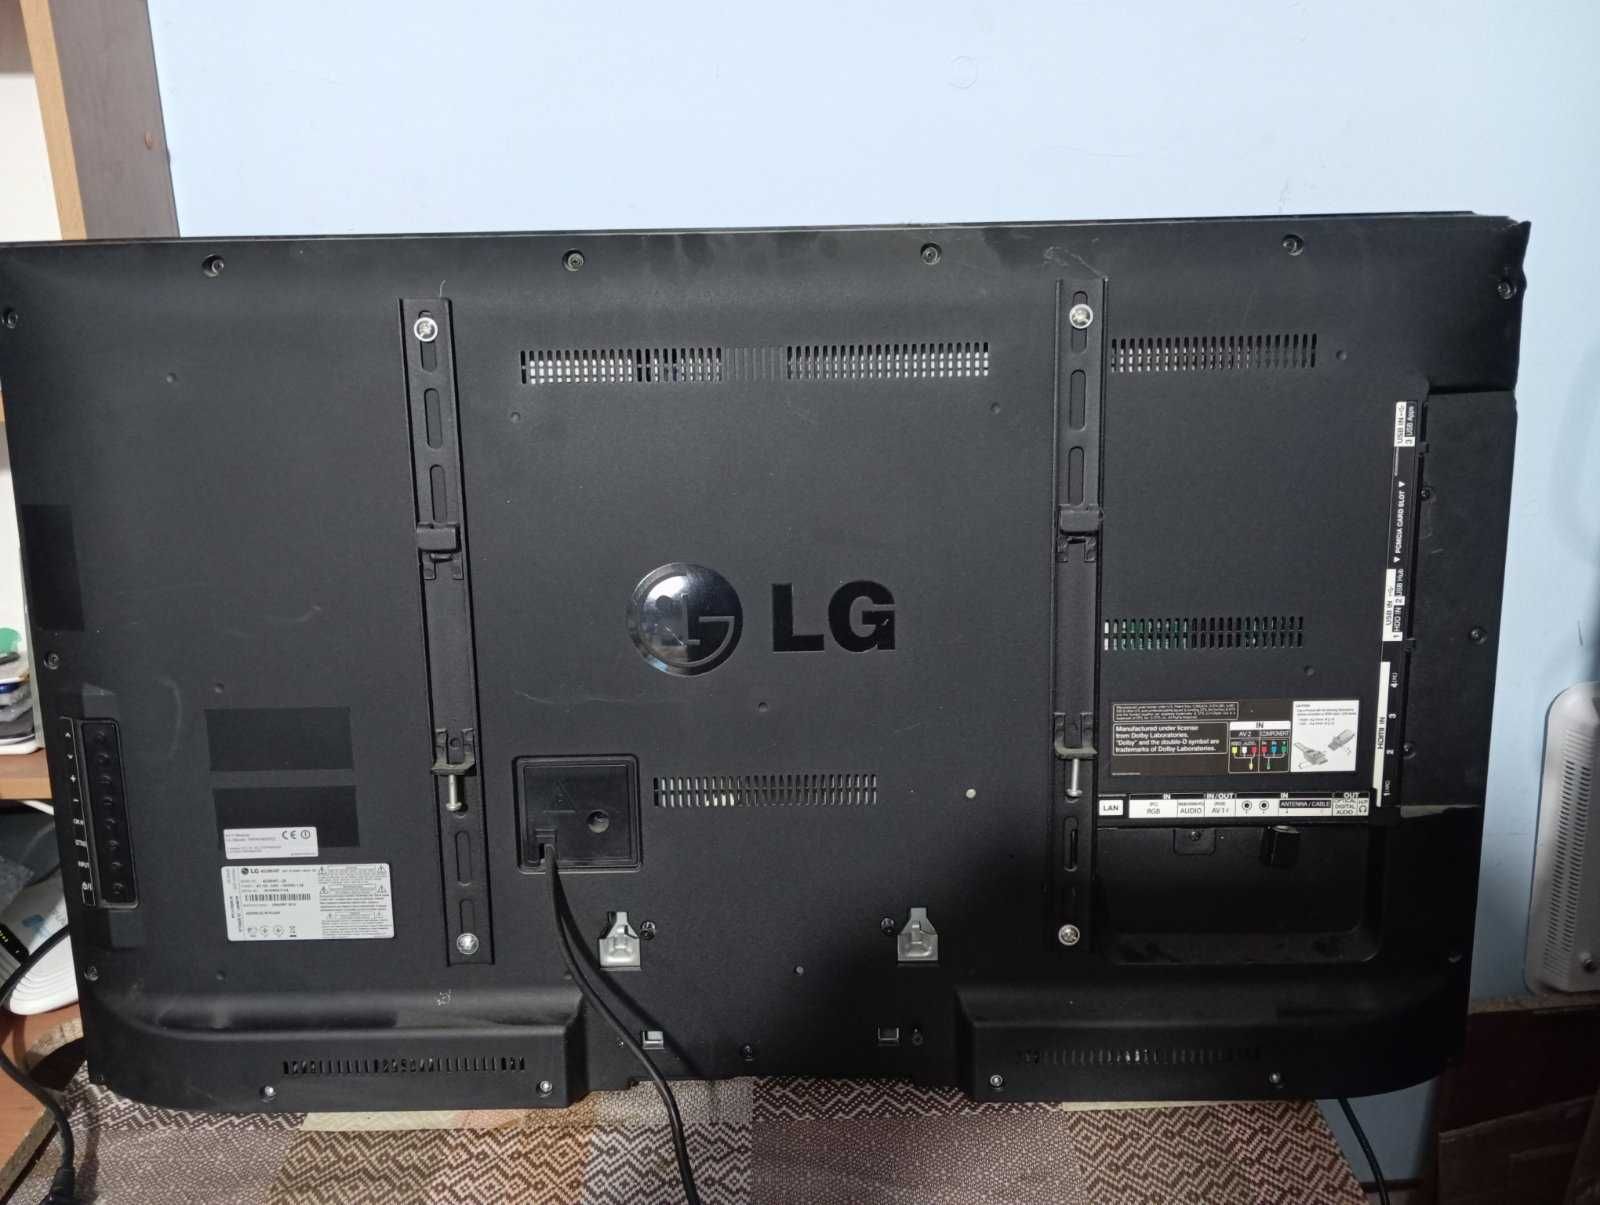 Телевизор LG 42LM640T